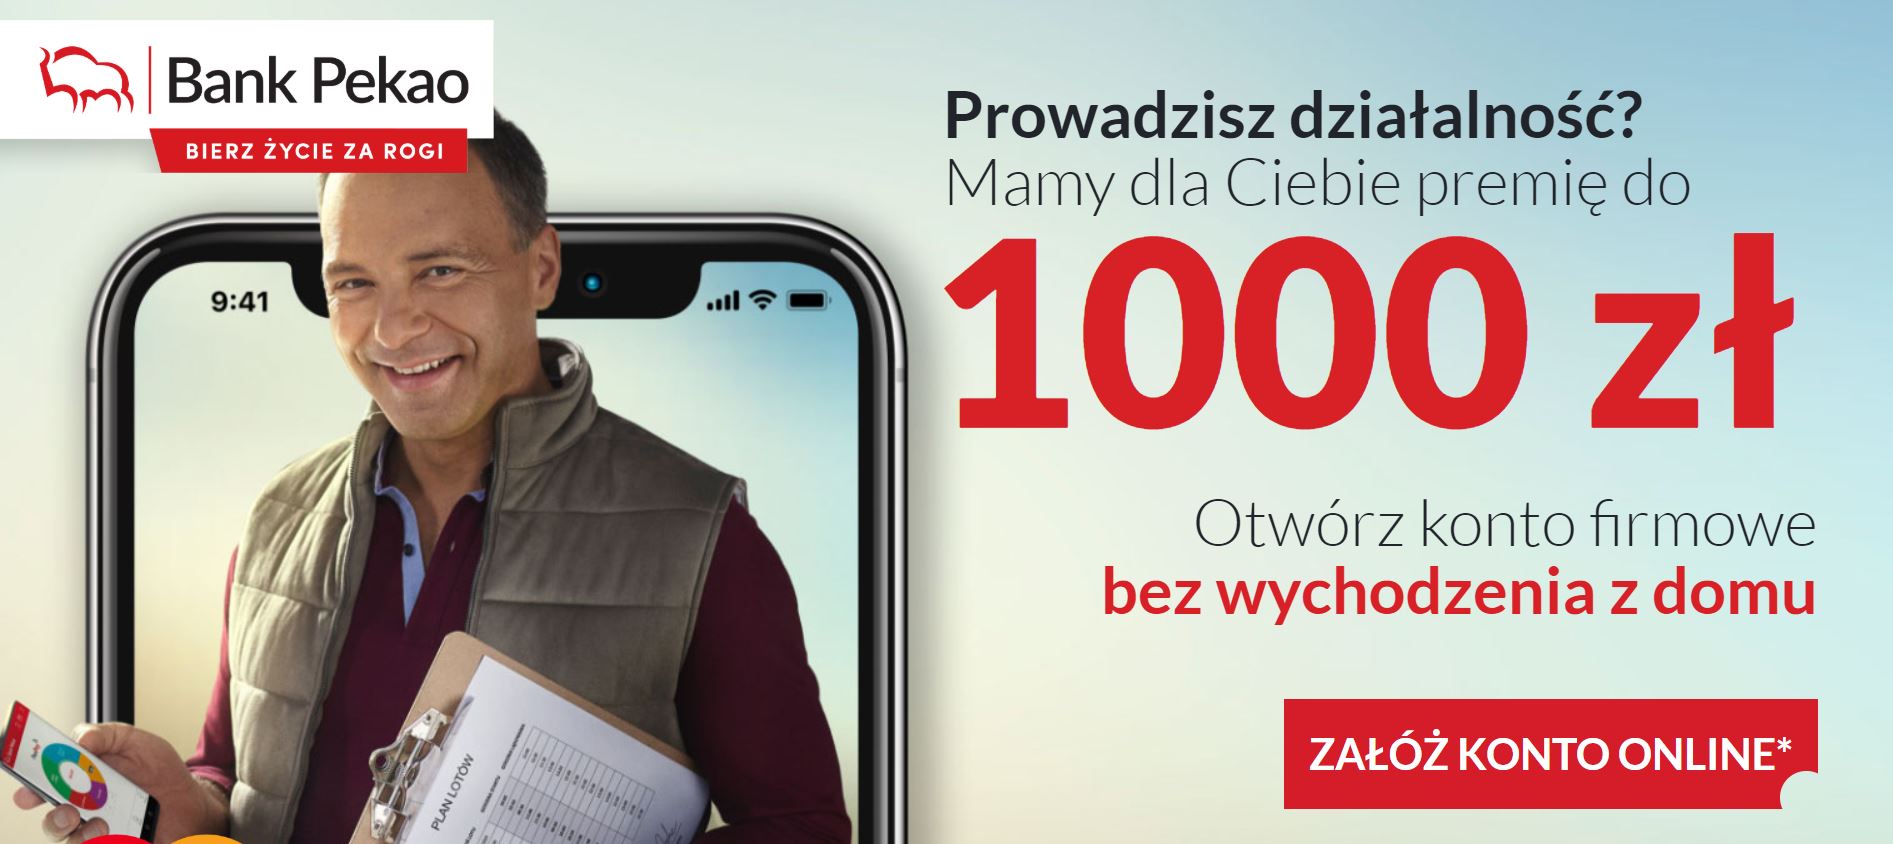 Pekao Biznes 1000 zł dla firm